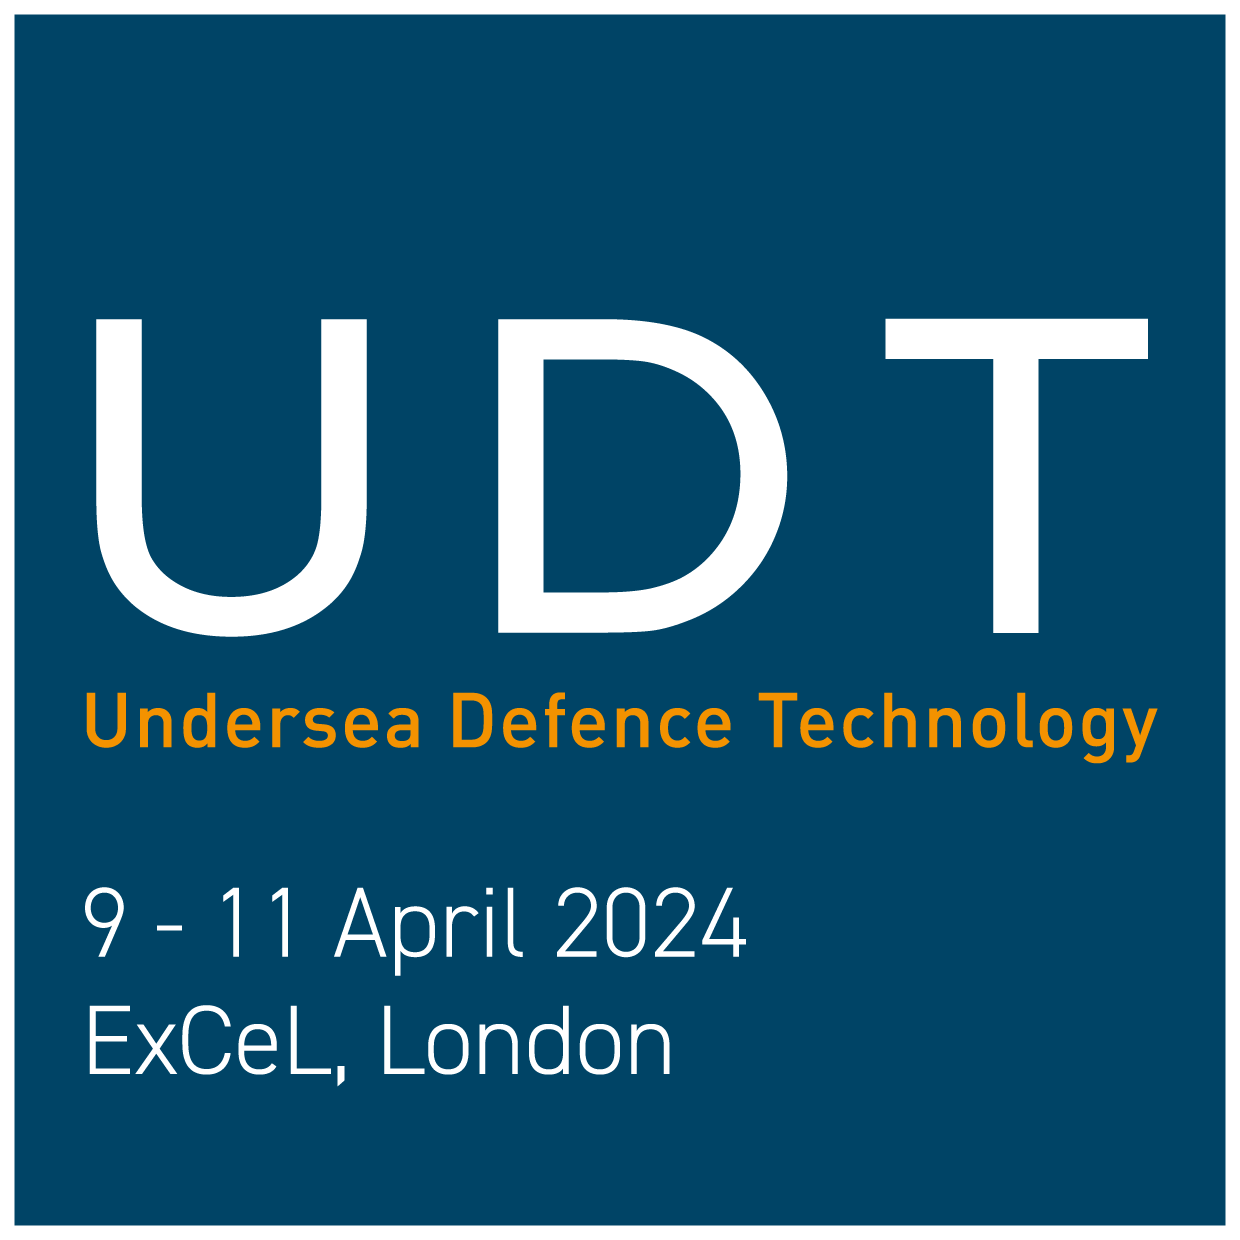 UDT 2024 logo